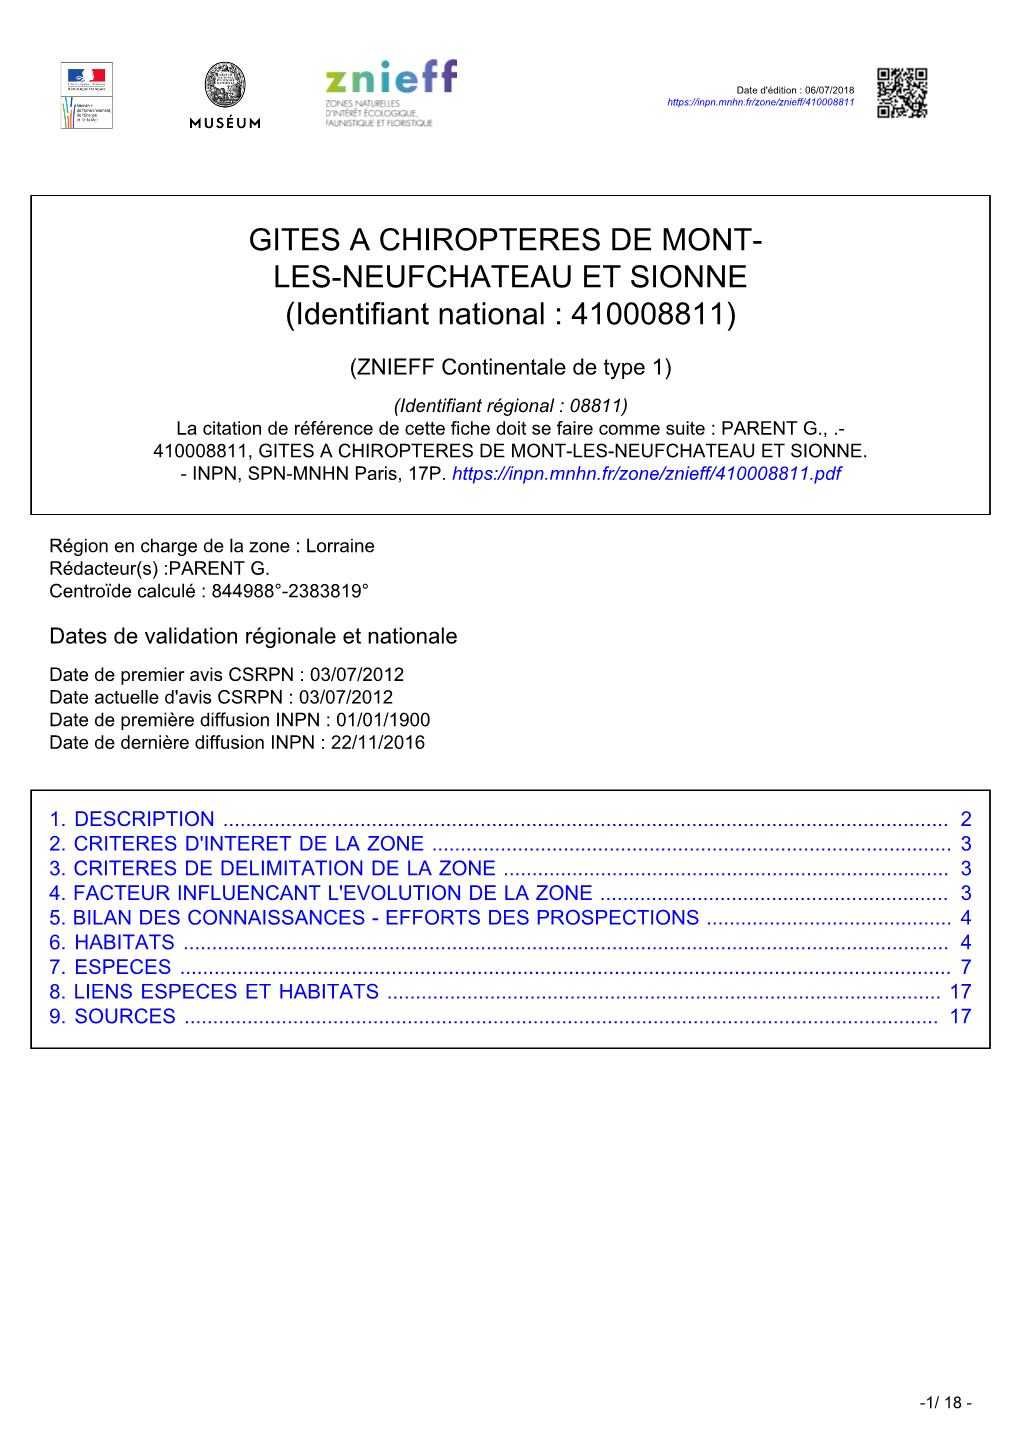 GITES a CHIROPTERES DE MONT- LES-NEUFCHATEAU ET SIONNE (Identifiant National : 410008811)